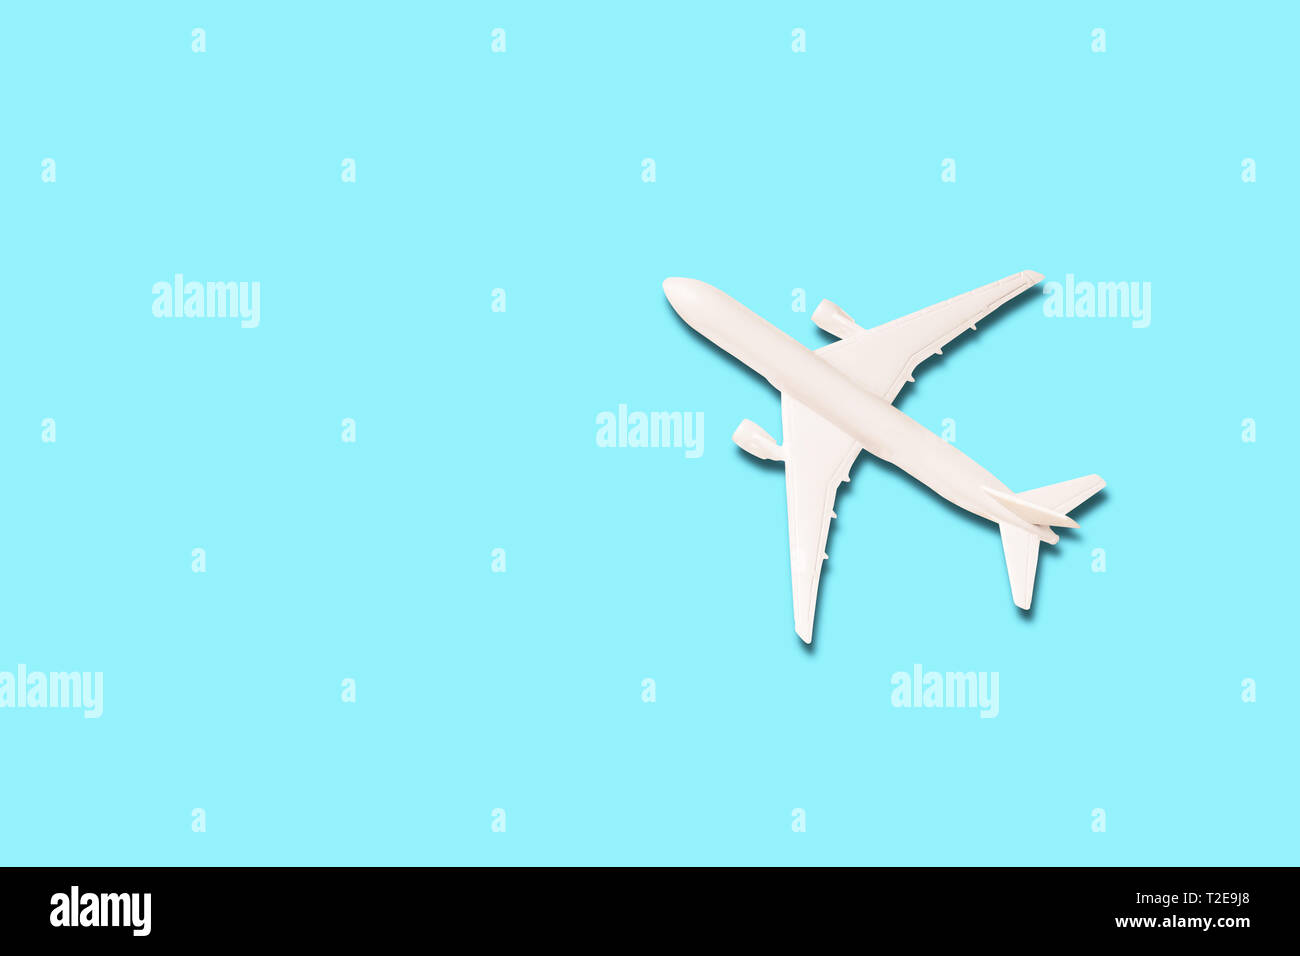 Modell der weißen Flugzeug auf den hellblauen Hintergrund mit Kopie Raum Stockfoto